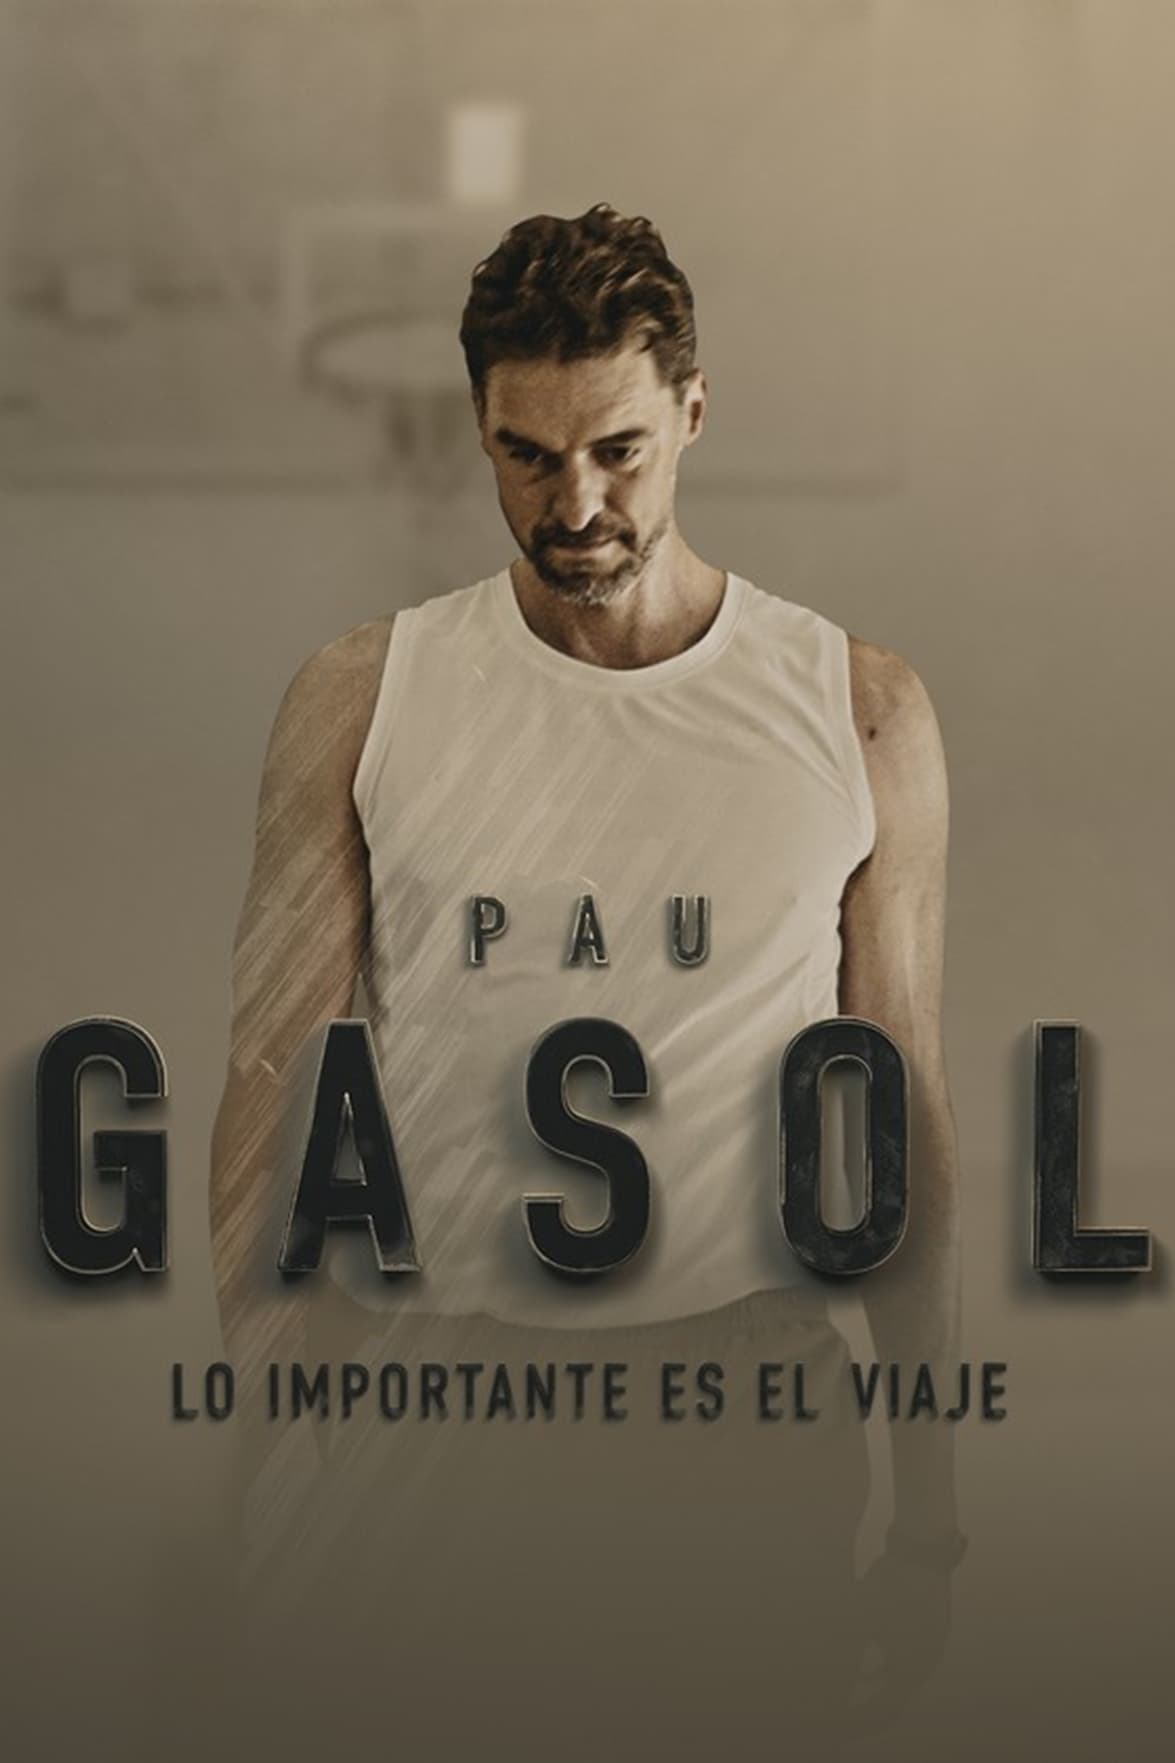 Pau Gasol - Lo importante es el Viaje TV Shows About Basketball